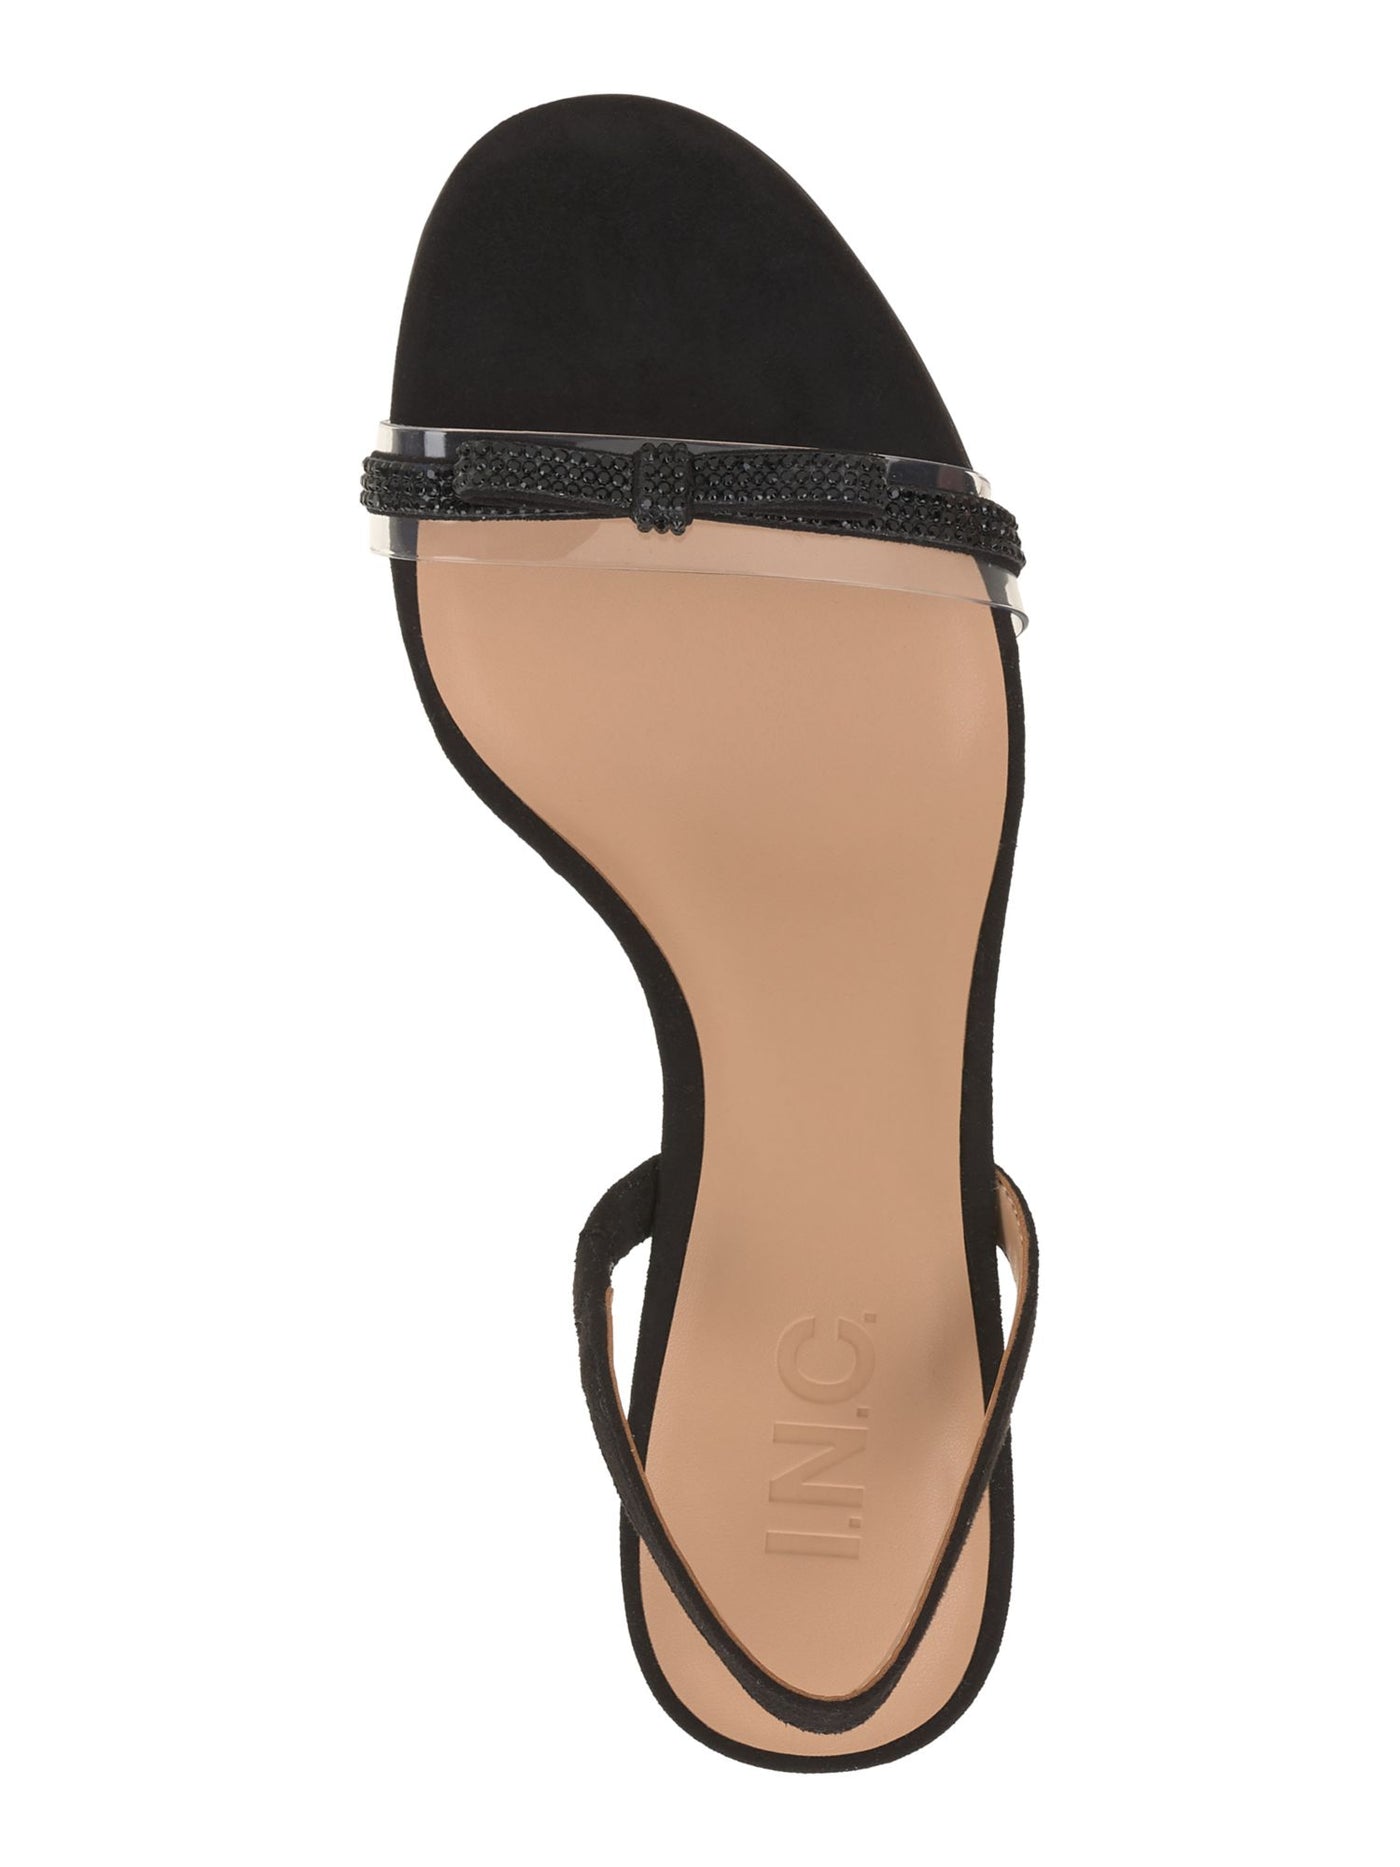 INC Womens Black Mixed Media Padded Bow Accent Goring Linnette Round Toe Stiletto Slip On Dress Slingback Sandal 9 M